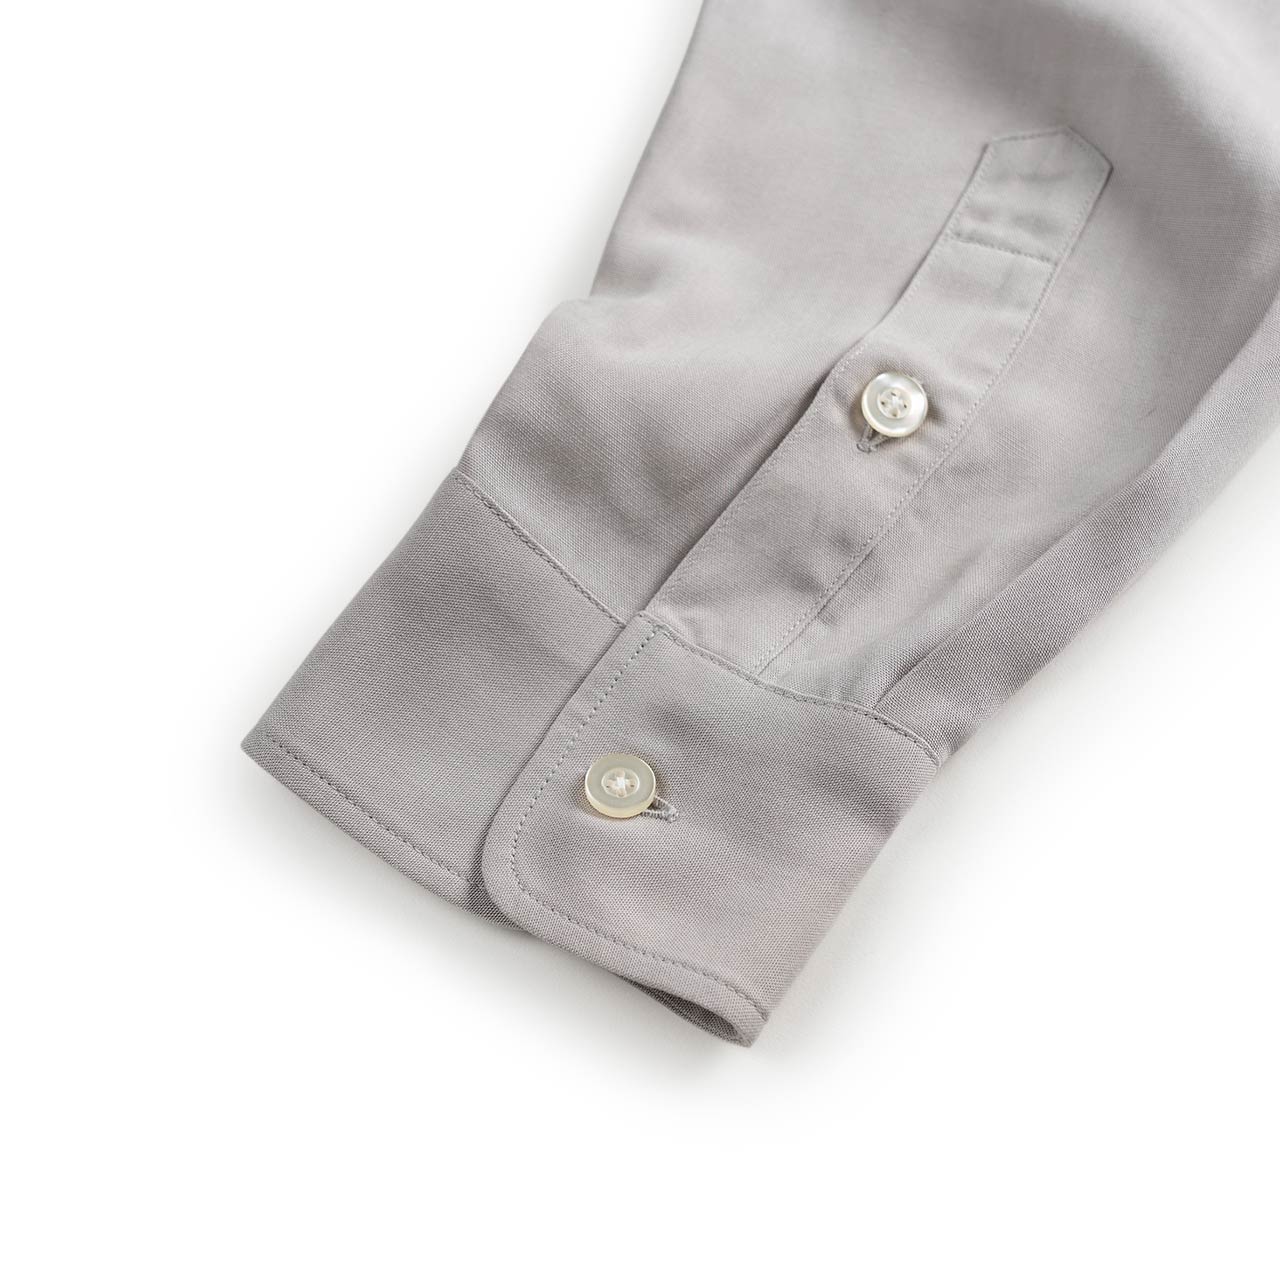 wacko maria wacko maria 50s longsleeve shirt (type-2) (gray)